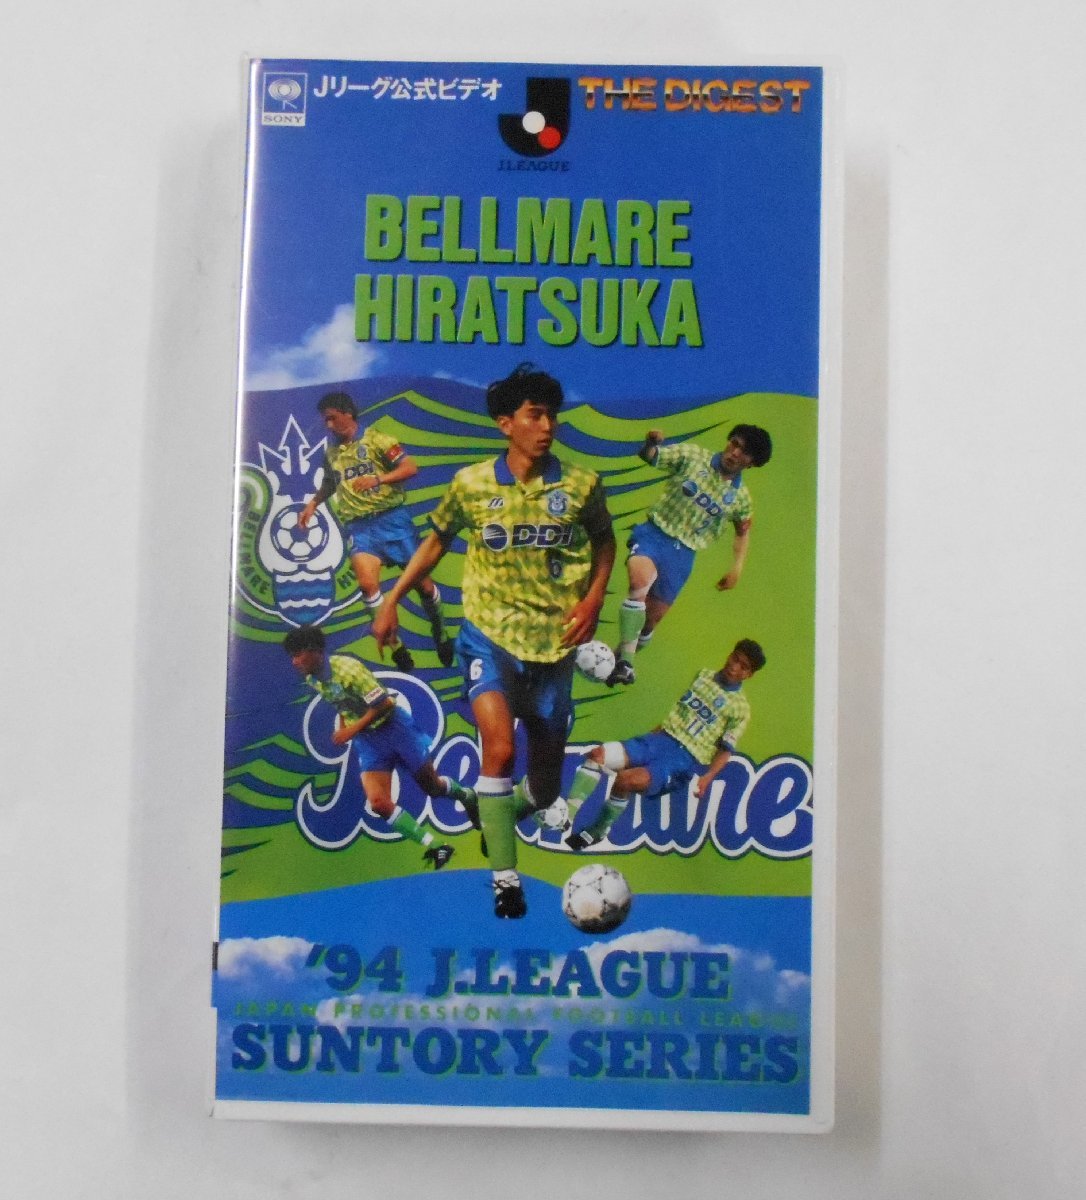  распроданный J Lee g официальный Shonan bell mare flat .*94 Suntory серии сборник VHS видео 1994 год BELLMARE HIRATSUKA [u302]